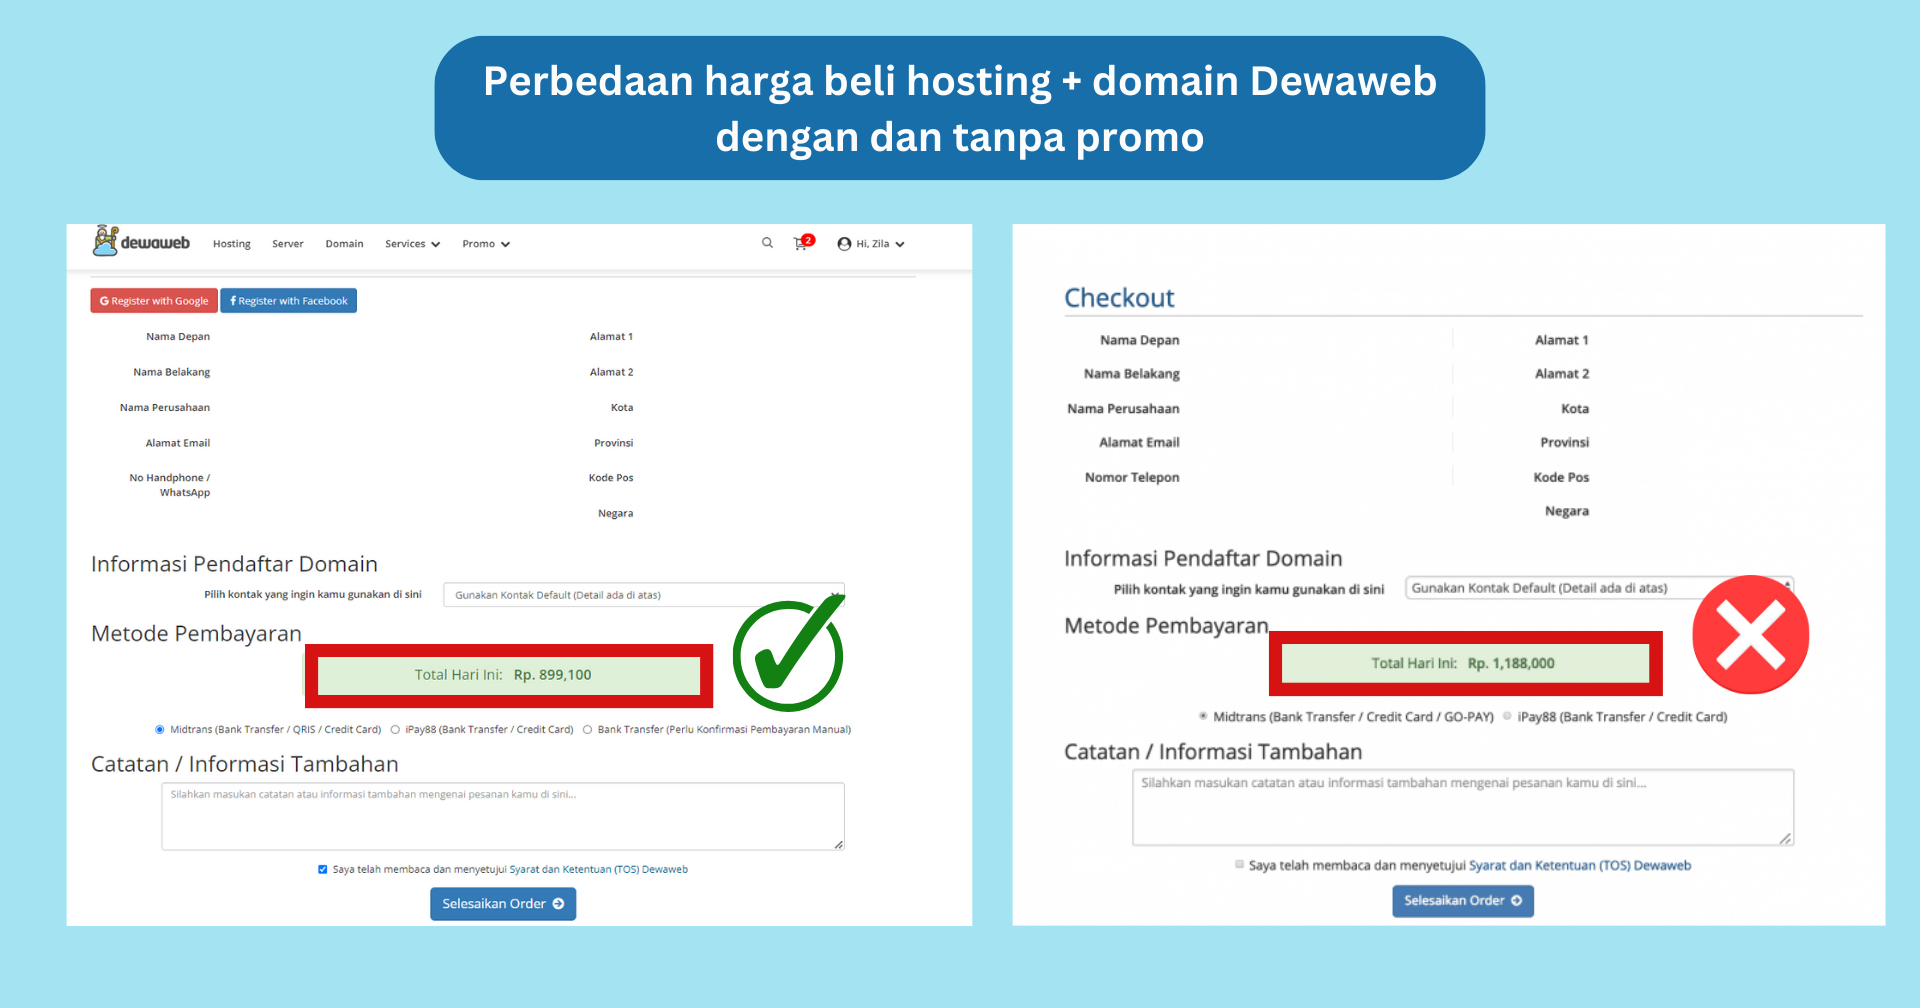 perbedaan harga hosting dengan dan tanpa promo